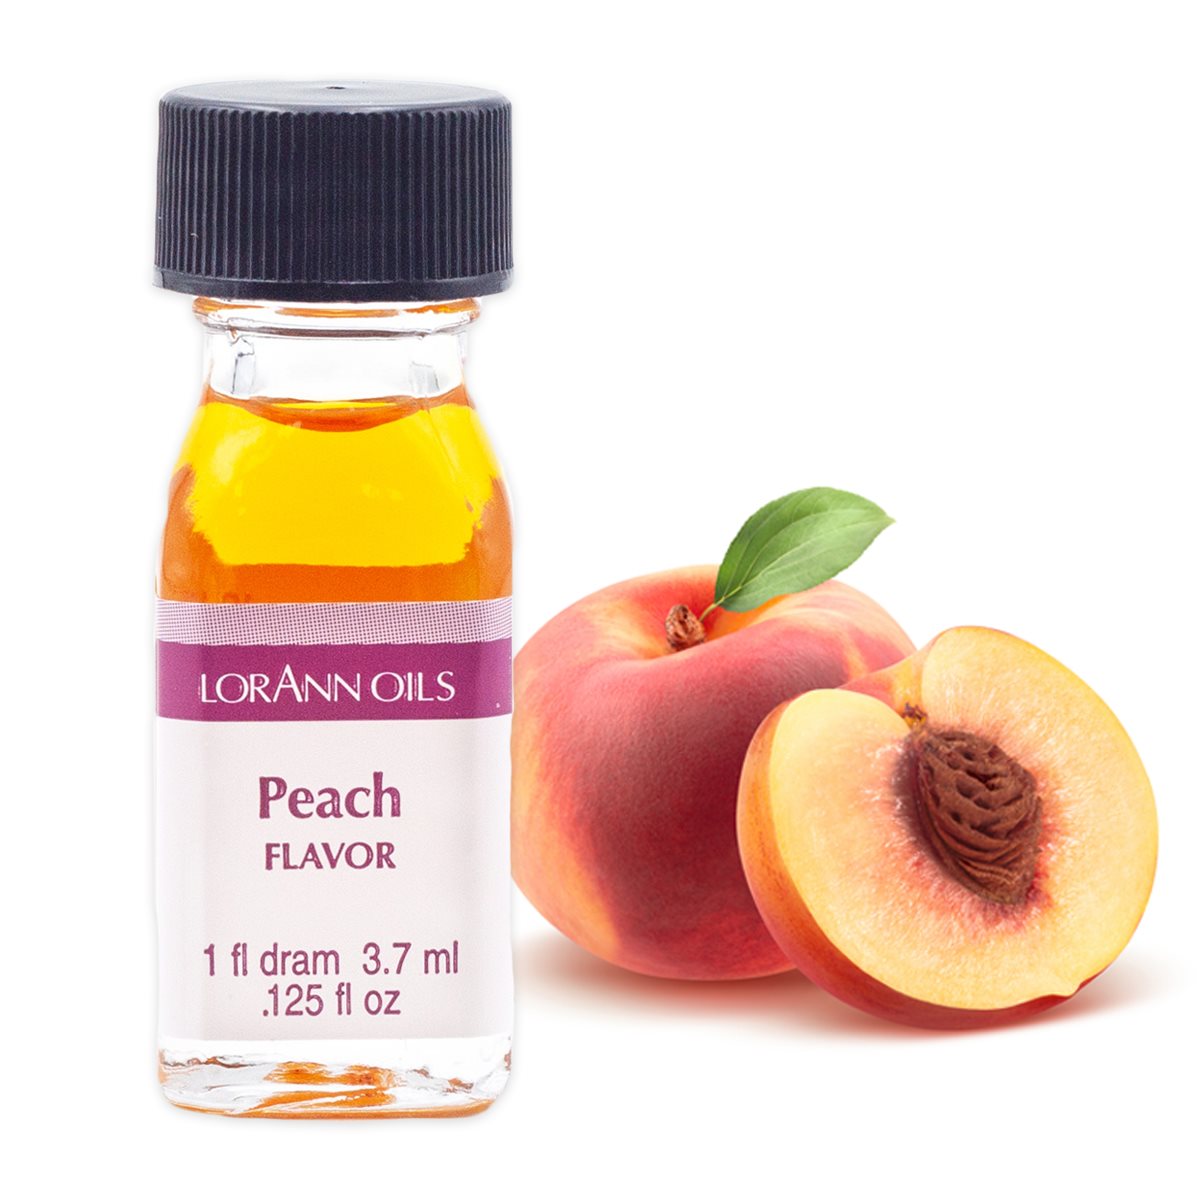 Peach Flavor Oil, 1 Dram